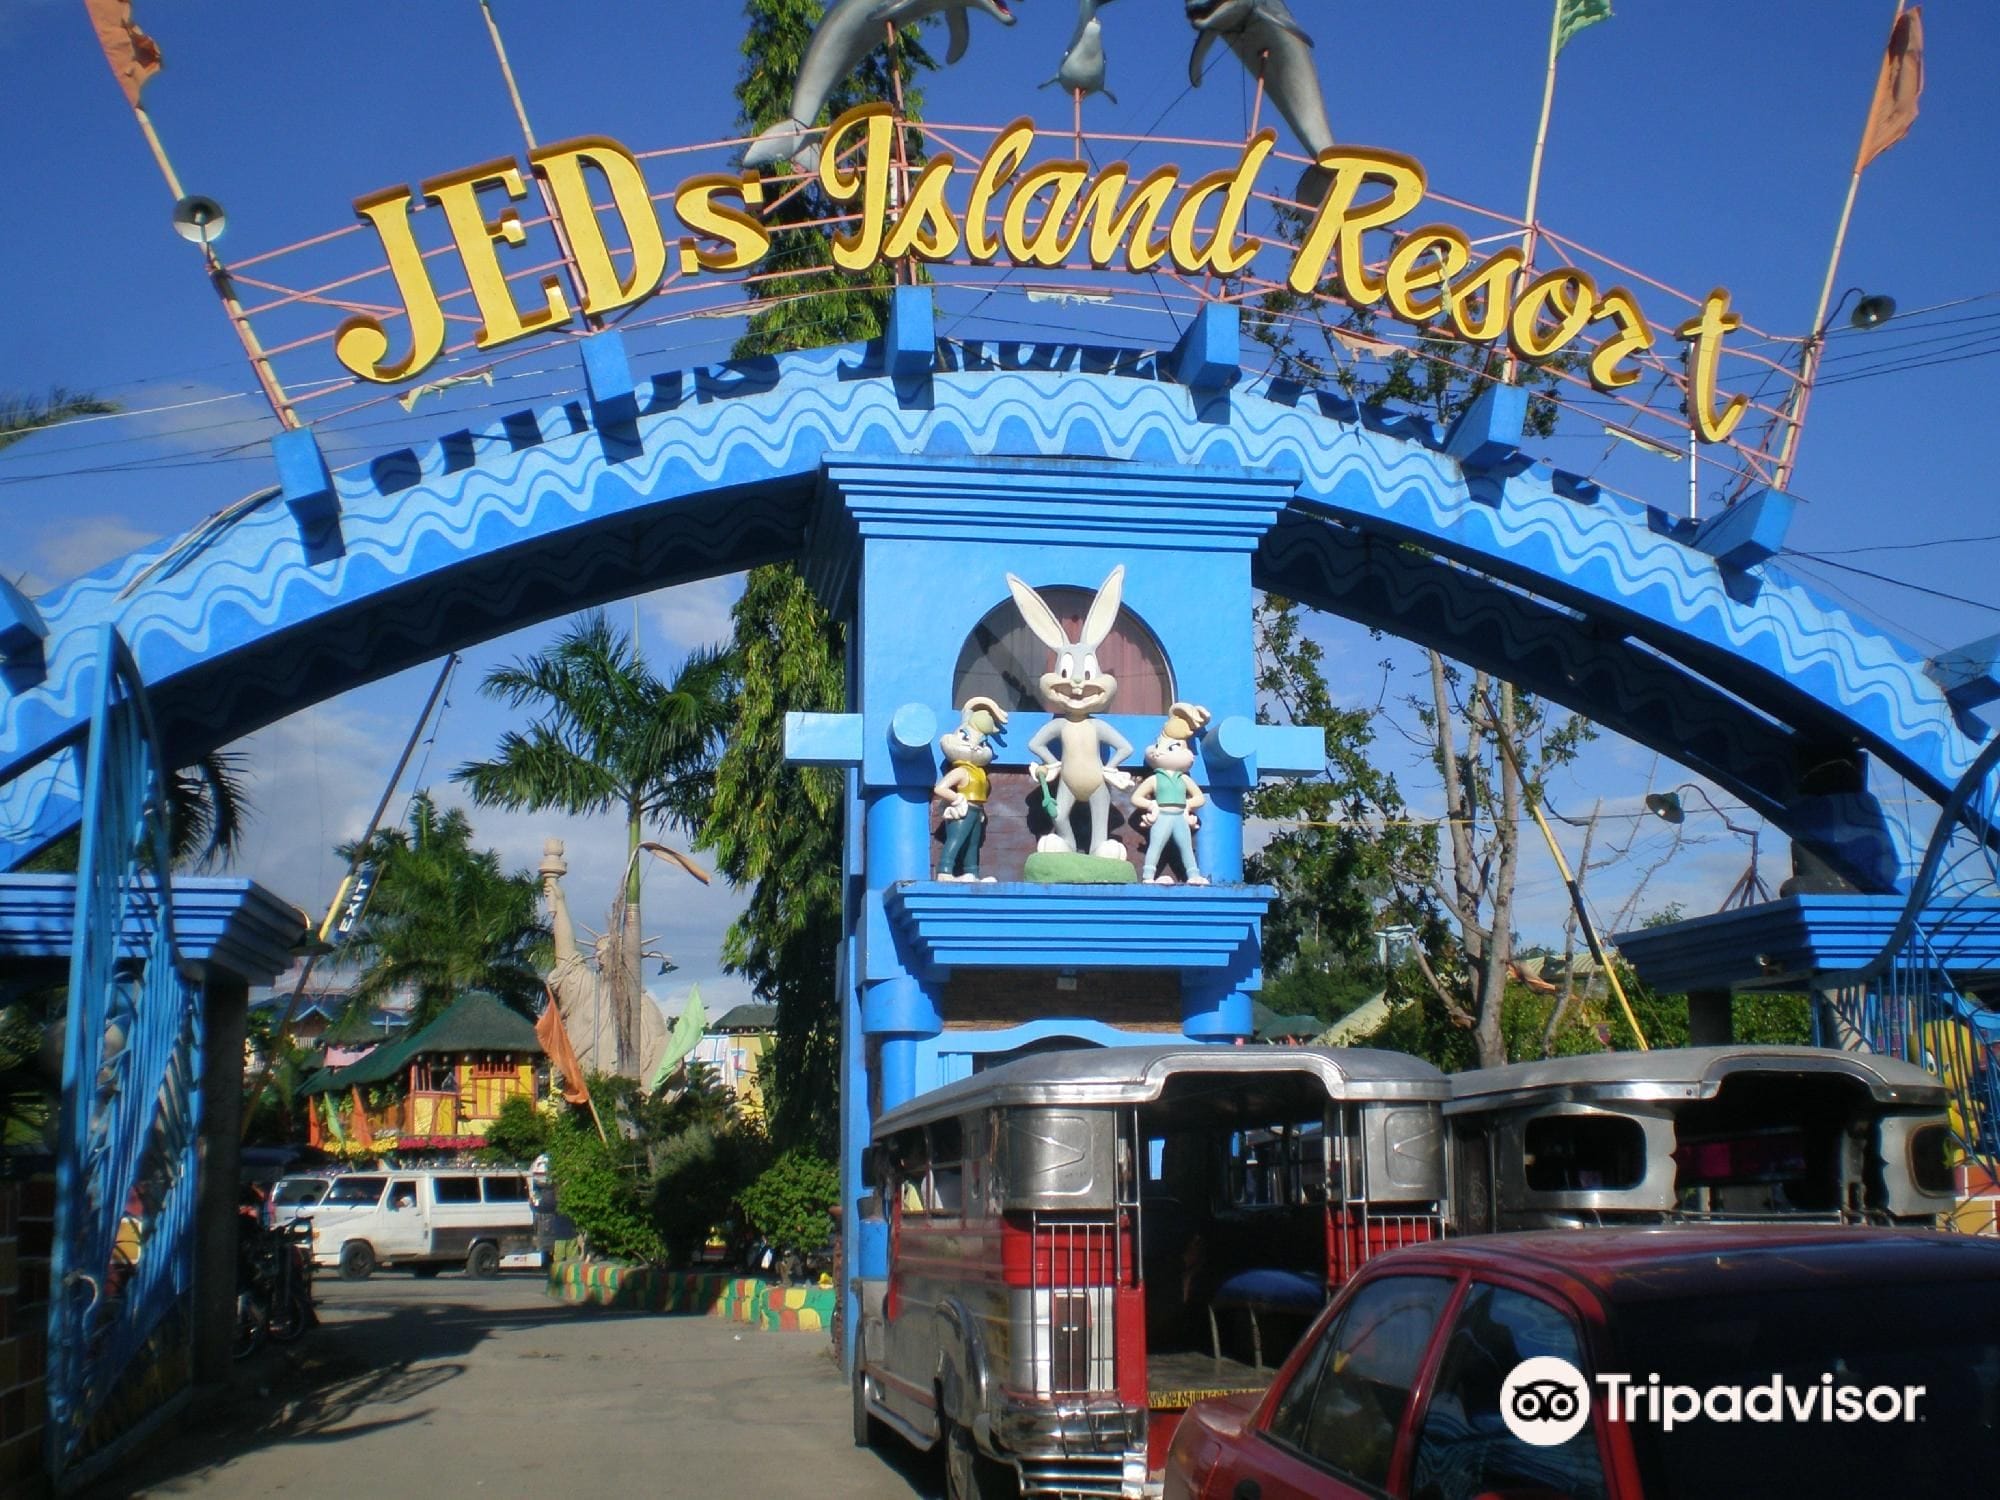 Jed's Island Resort